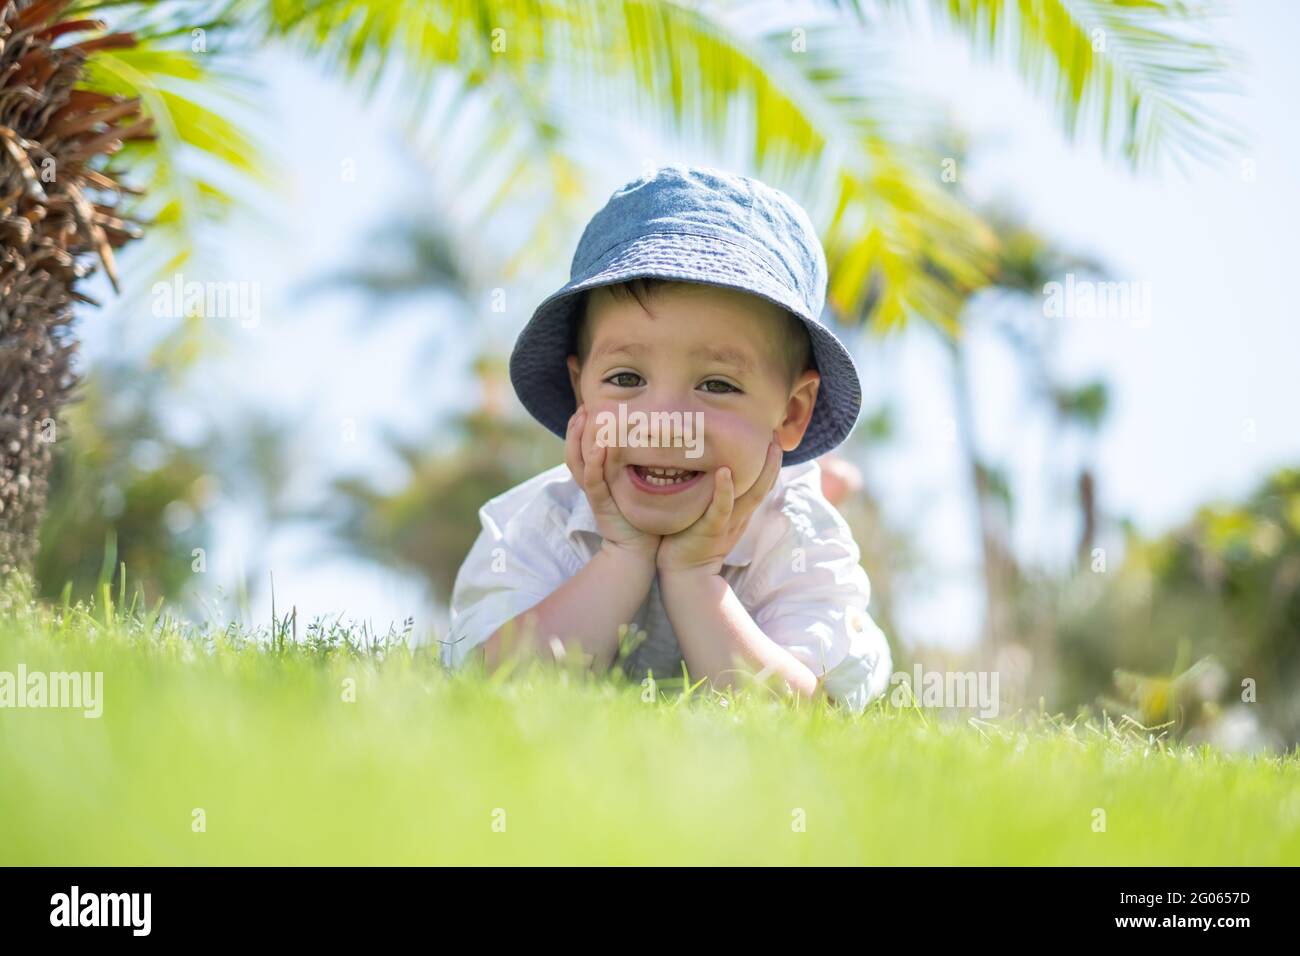 Un petit garçon qui pose sur l'herbe verte sur la pelouse sous les palmiers. Ciel bleu clair sur l'arrière-plan. Concept de vacances et d'enfance heureuse Banque D'Images